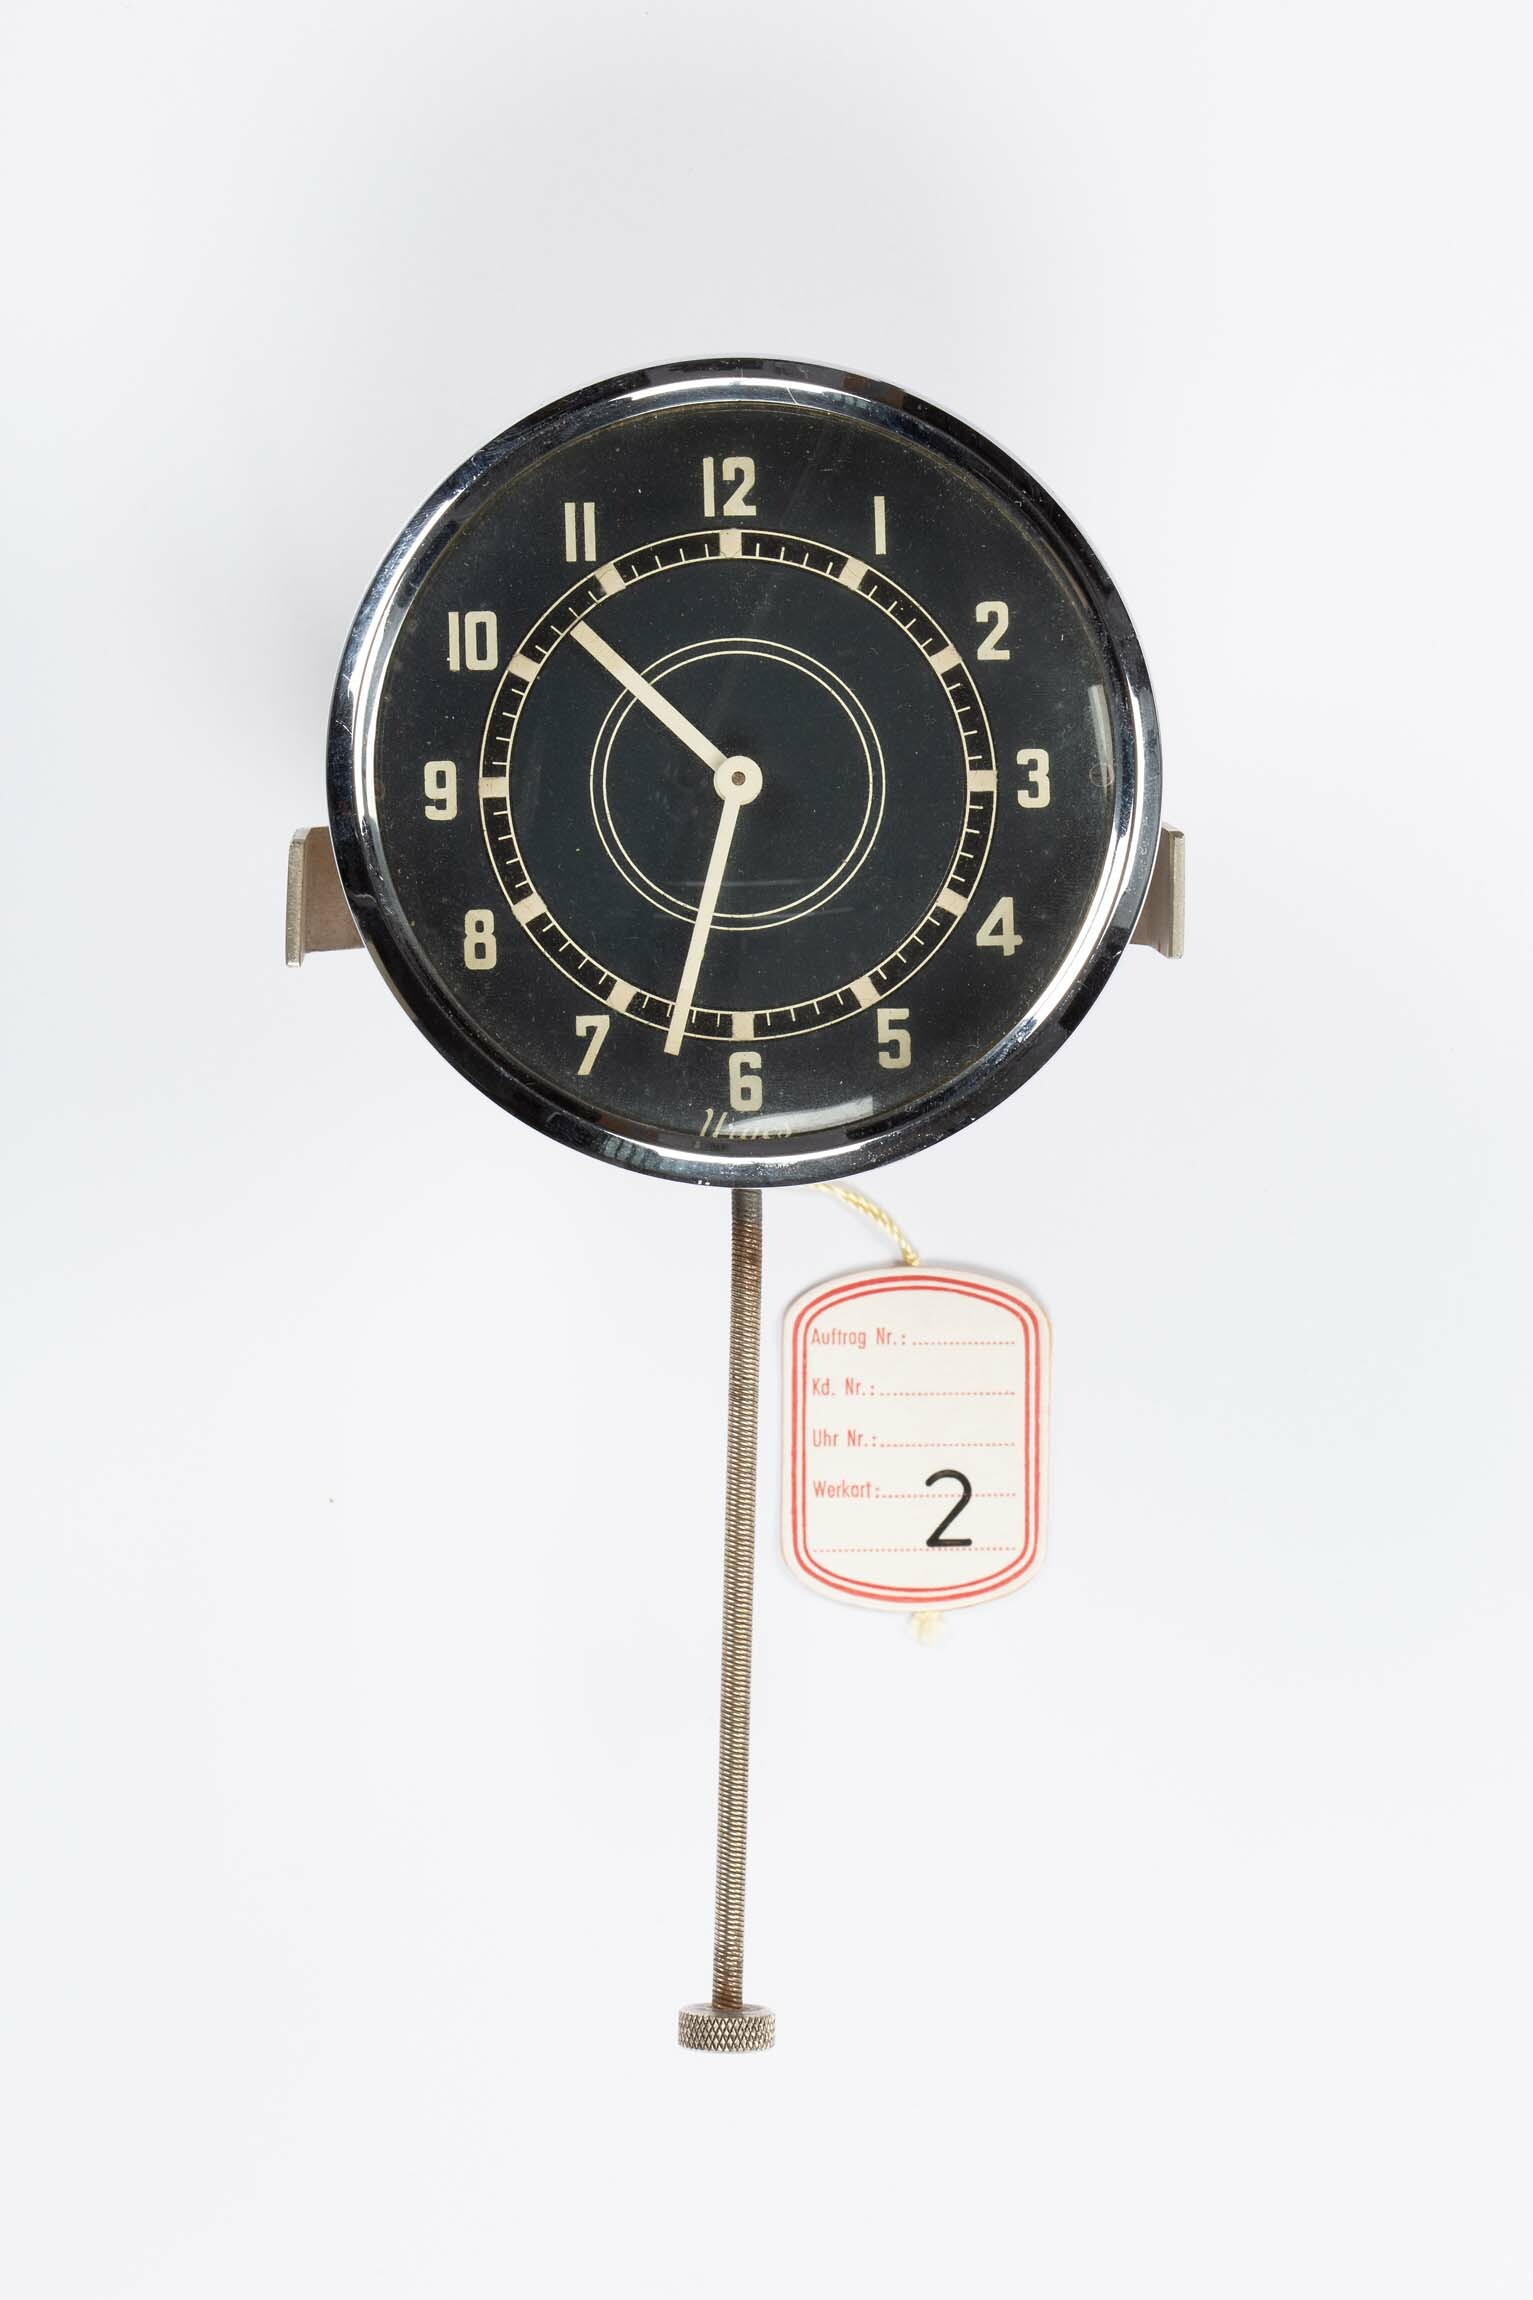 Autouhr, Urgos, Schwenningen, 1937 :: Deutsches Uhrenmuseum